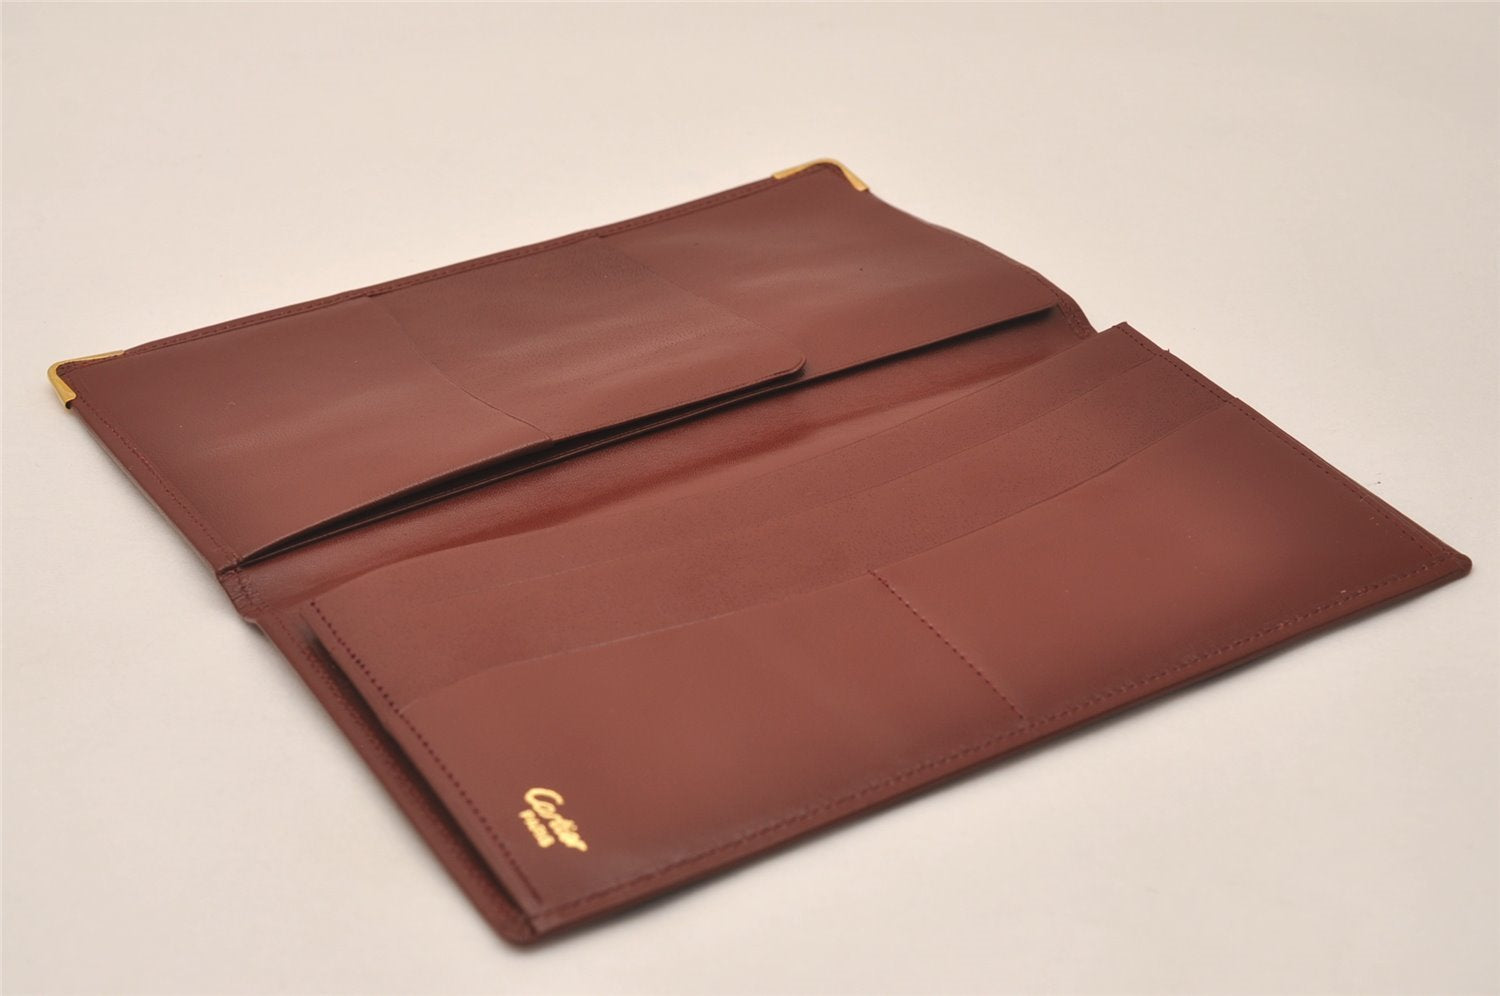 Authentic Cartier Must de Cartier Long Wallet Leather Bordeaux Red Box 8010J